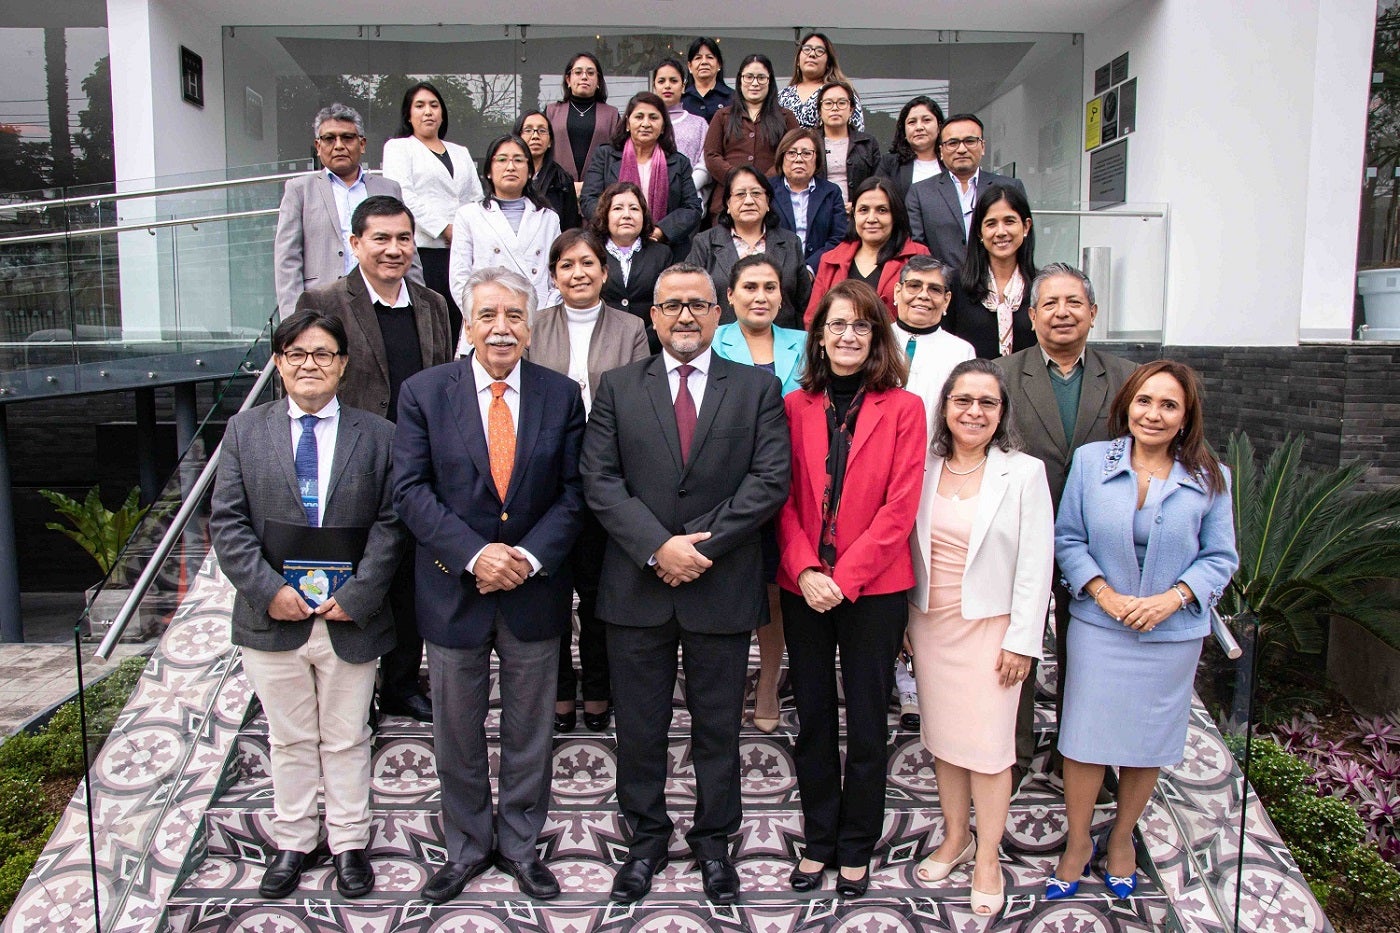 Foto grupal de autoridades y equipo técnico de inmunizaciones del país, equipo OPS, y miembros de la comisión